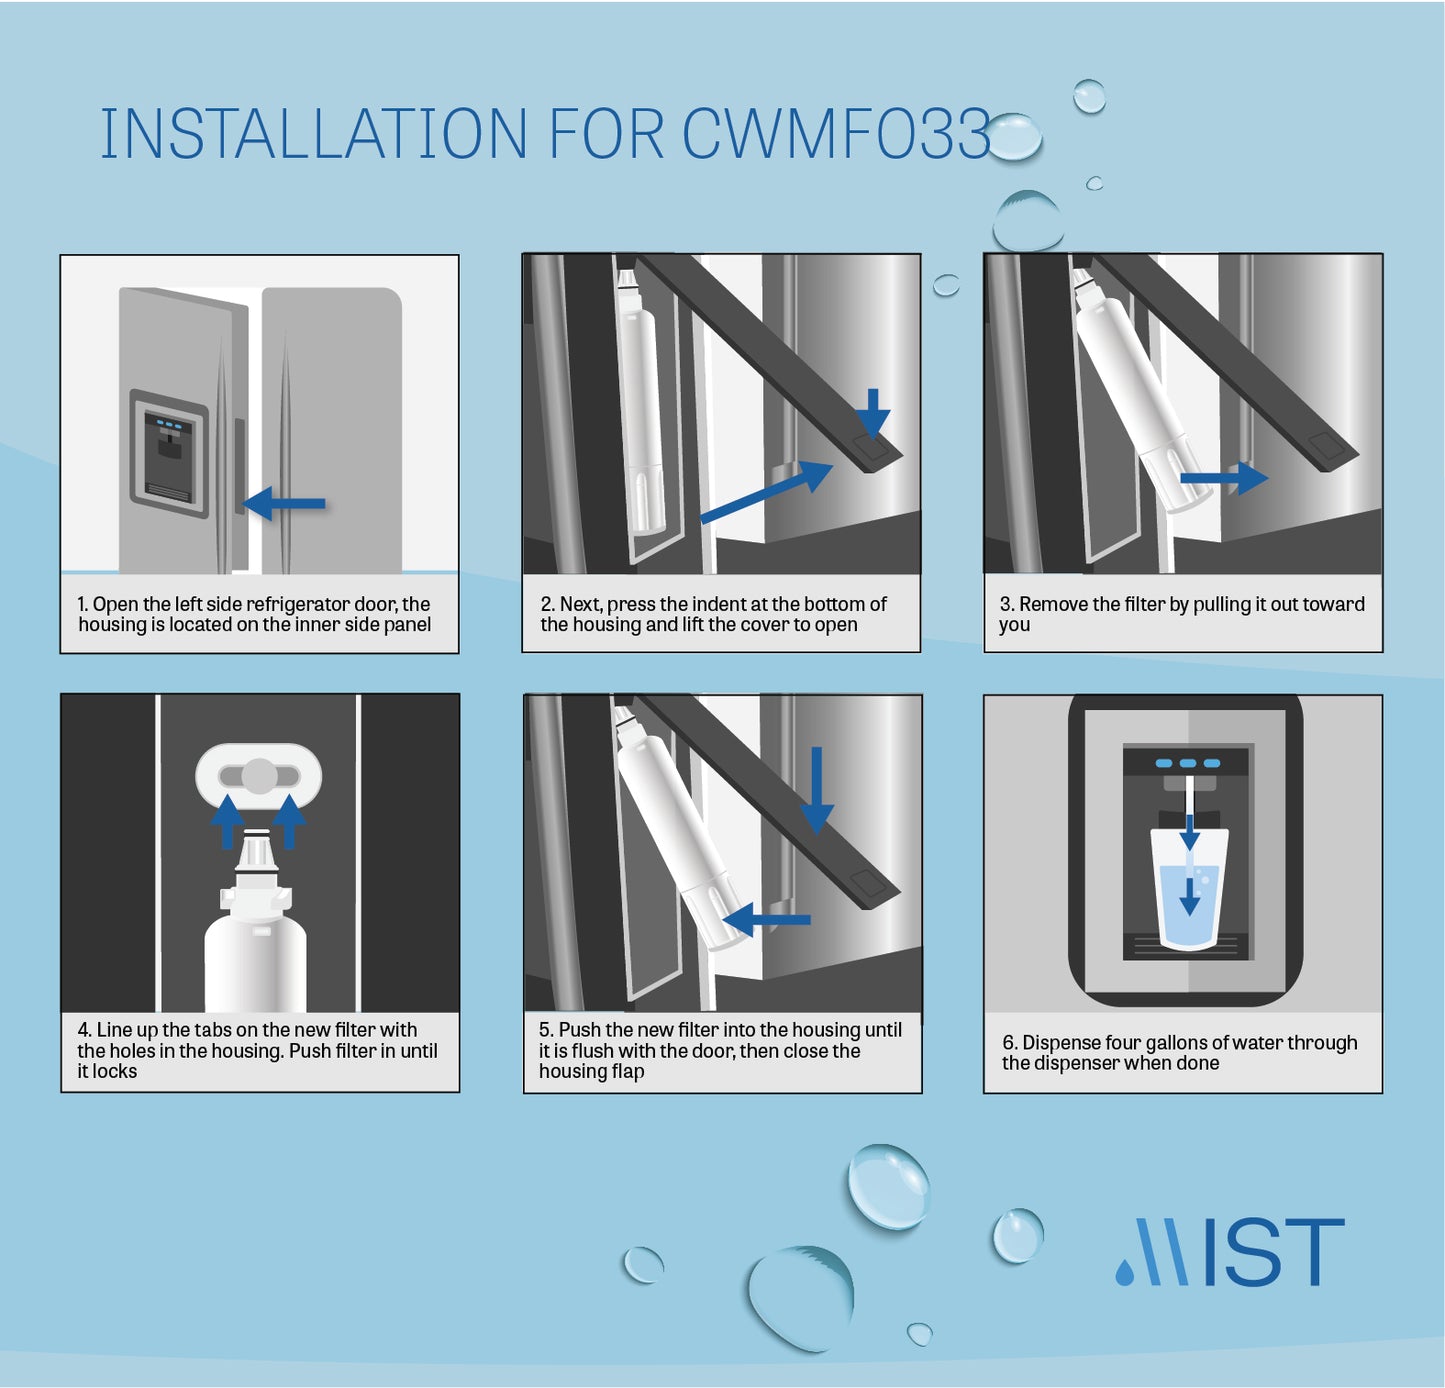 GE RPWF, RWF1063, RWF3600A, WSG-4, DWF-36, R-3600 Refrigerator Water Filter